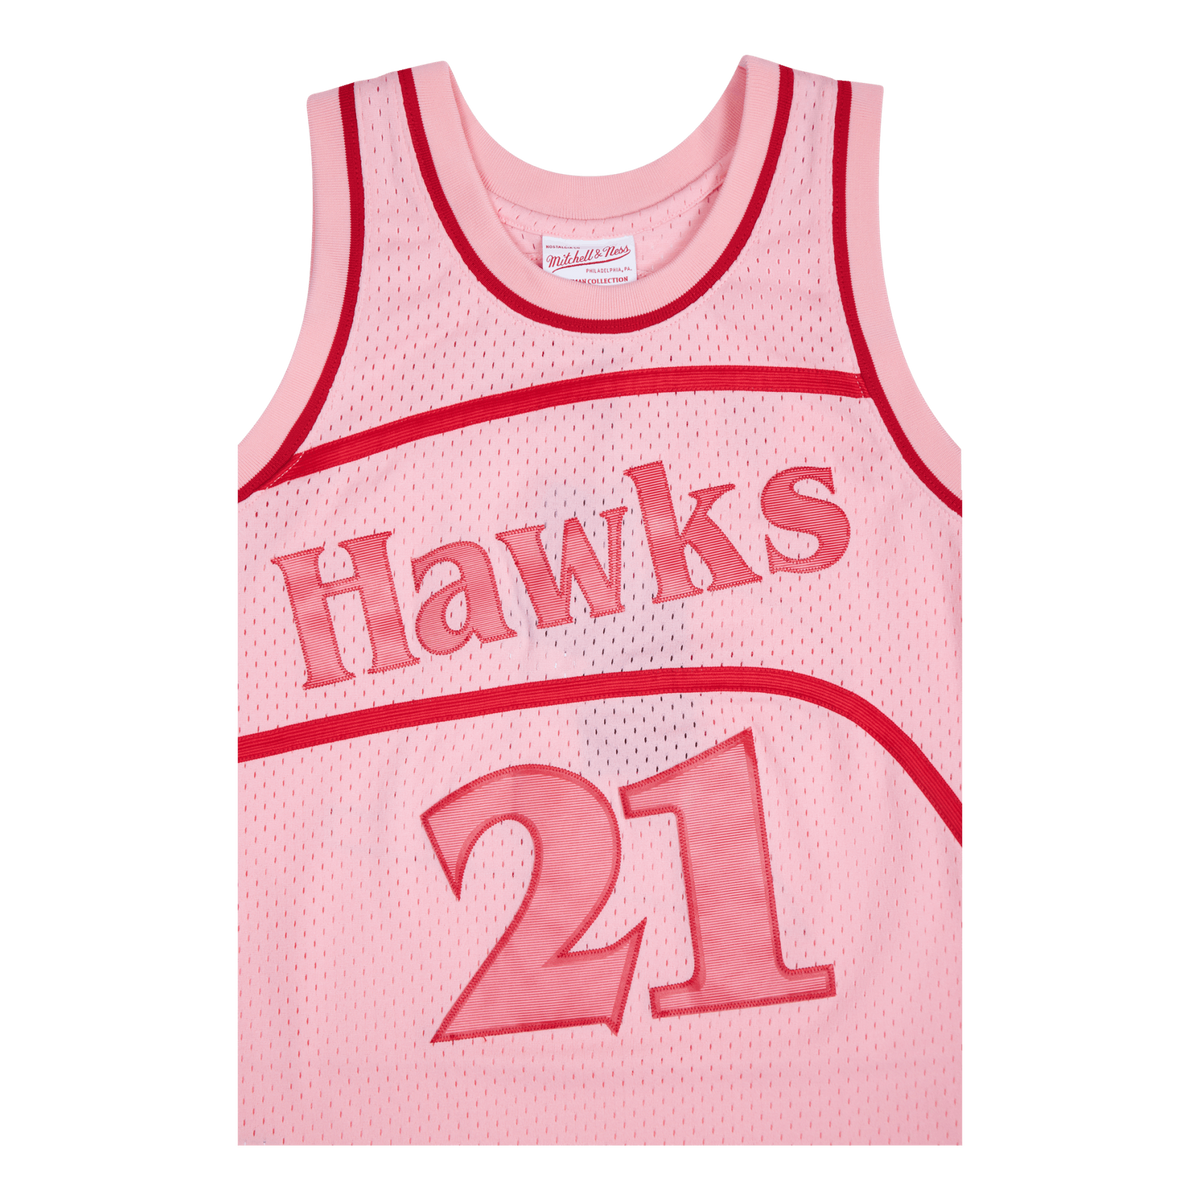 Hawks Space Knit Swingman Jersey - Dominique Wilkins